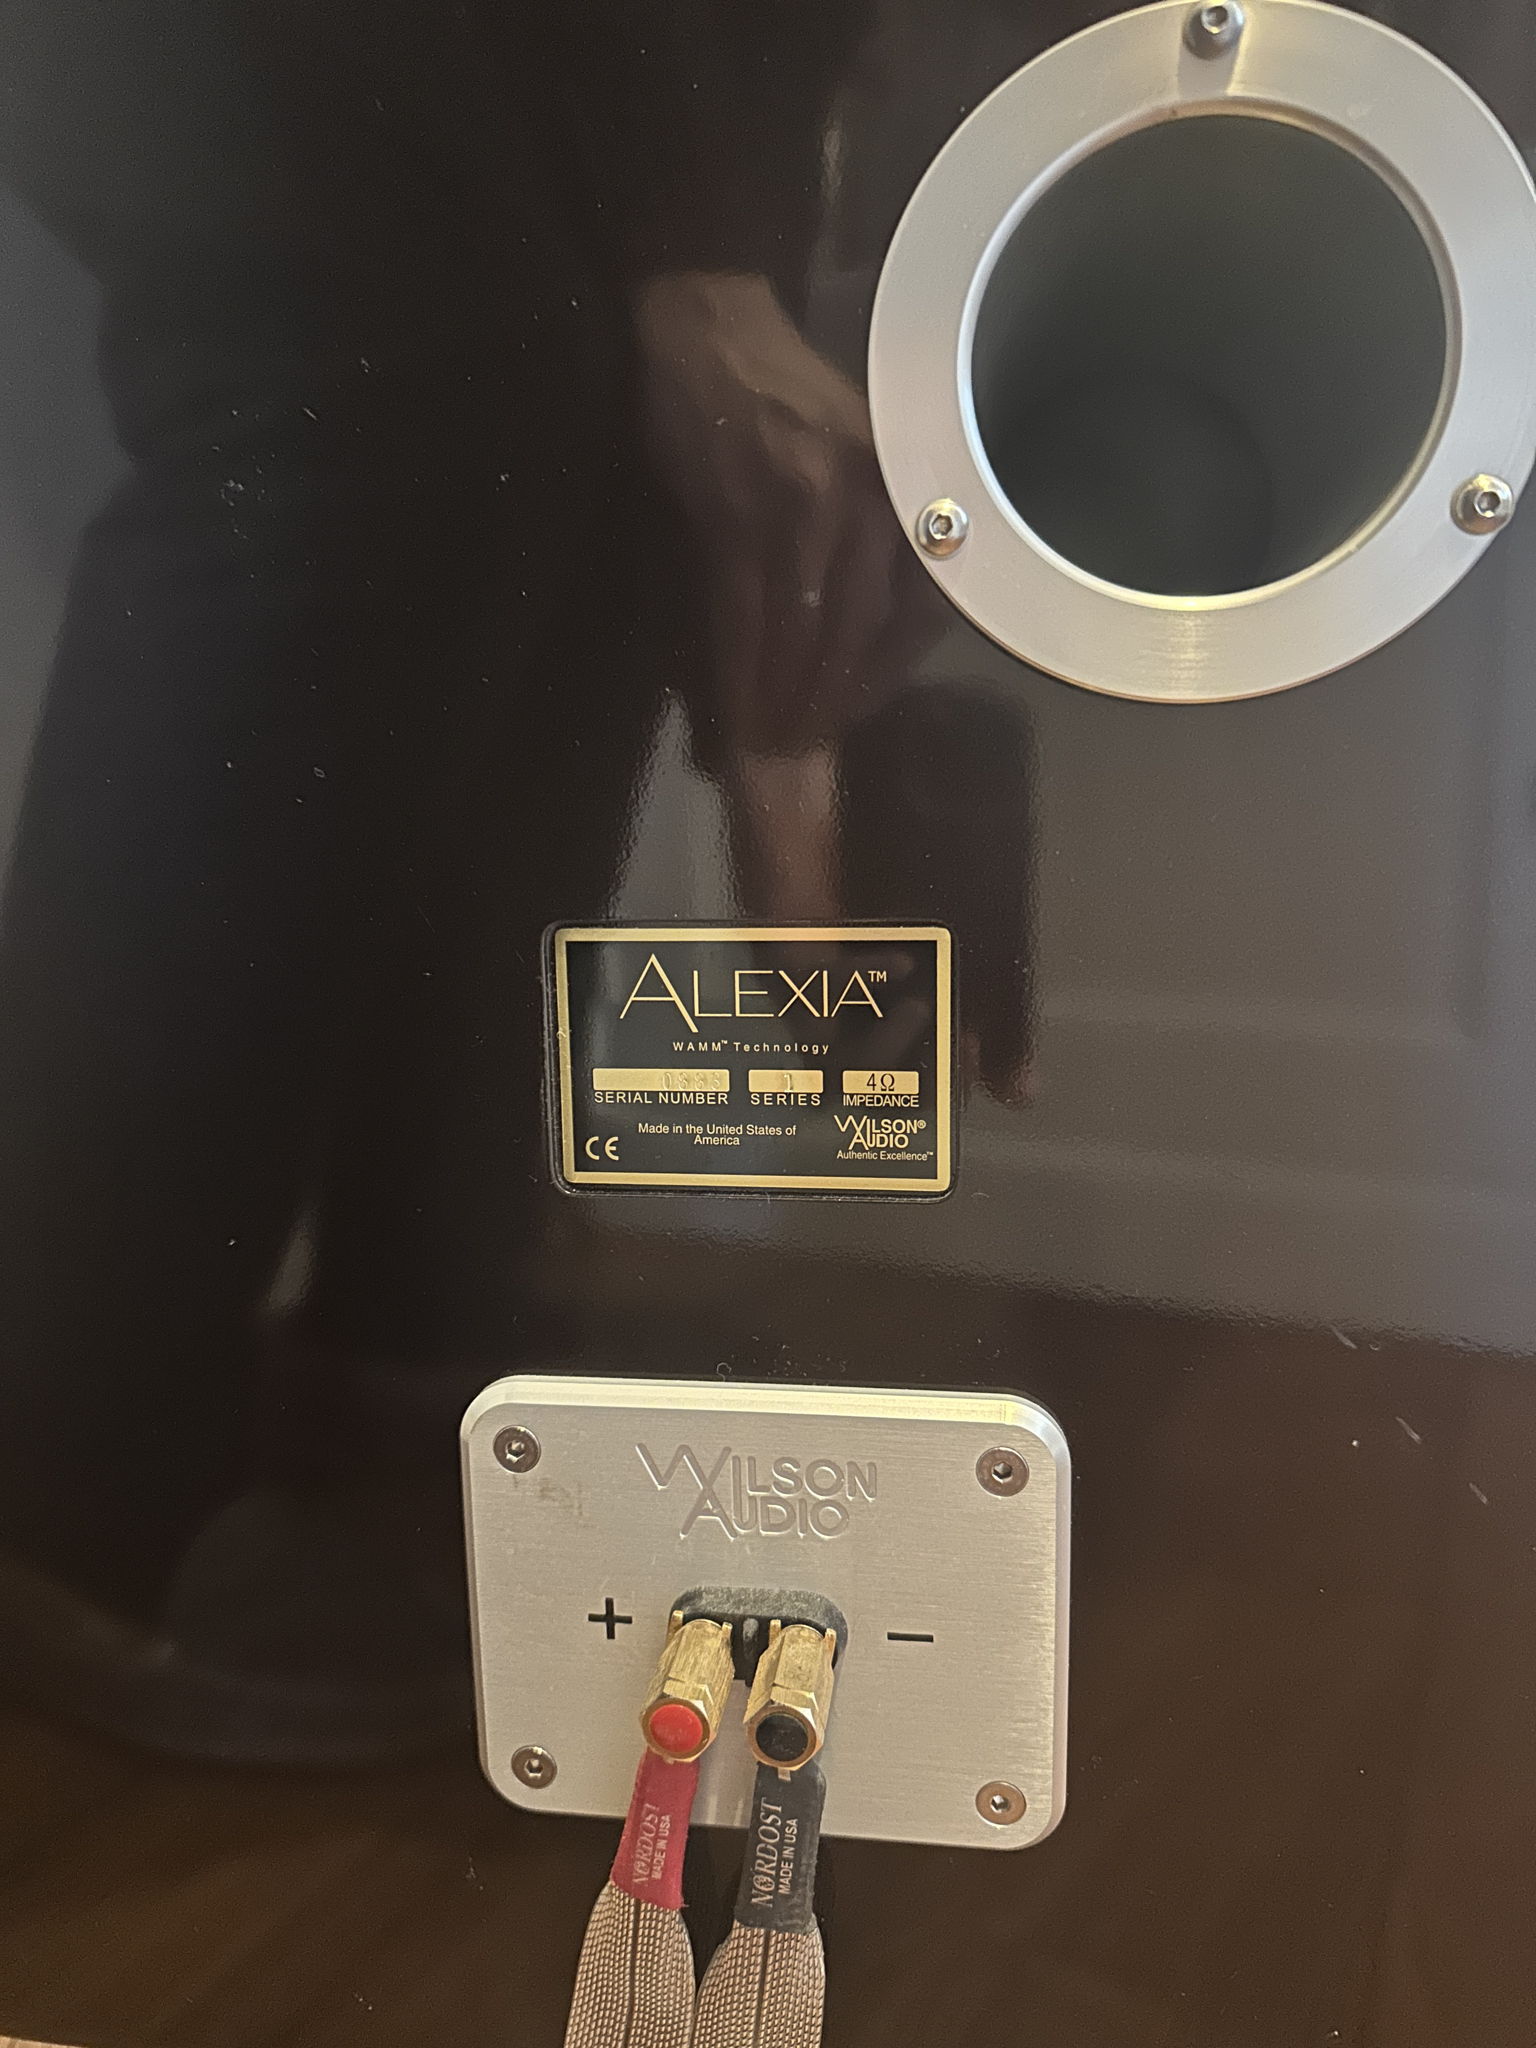 Wilson Audio Alexia 5